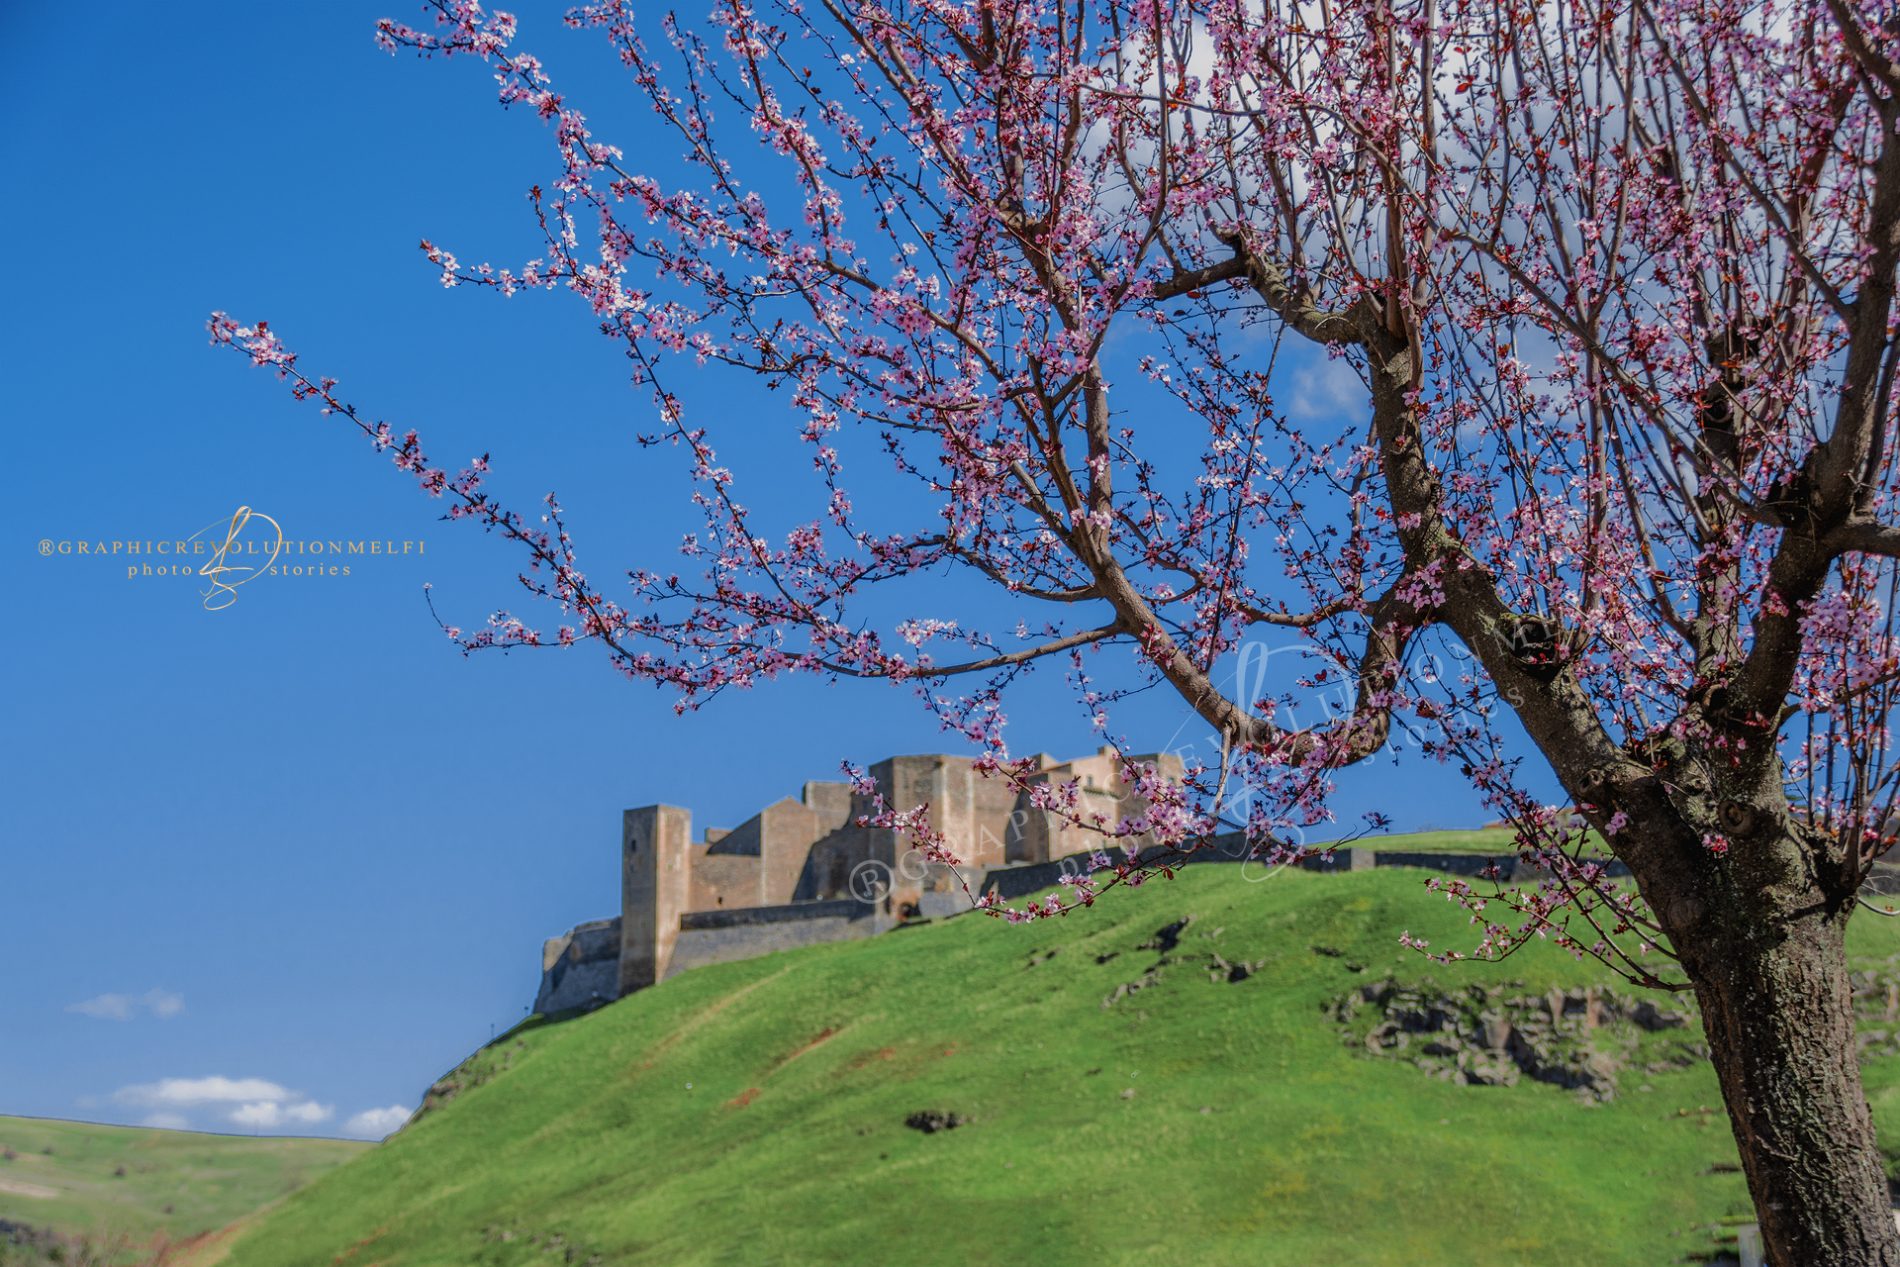 Equinozio di Primavera Giornata internazionale della felicità castello di melfi basilicata fotografo